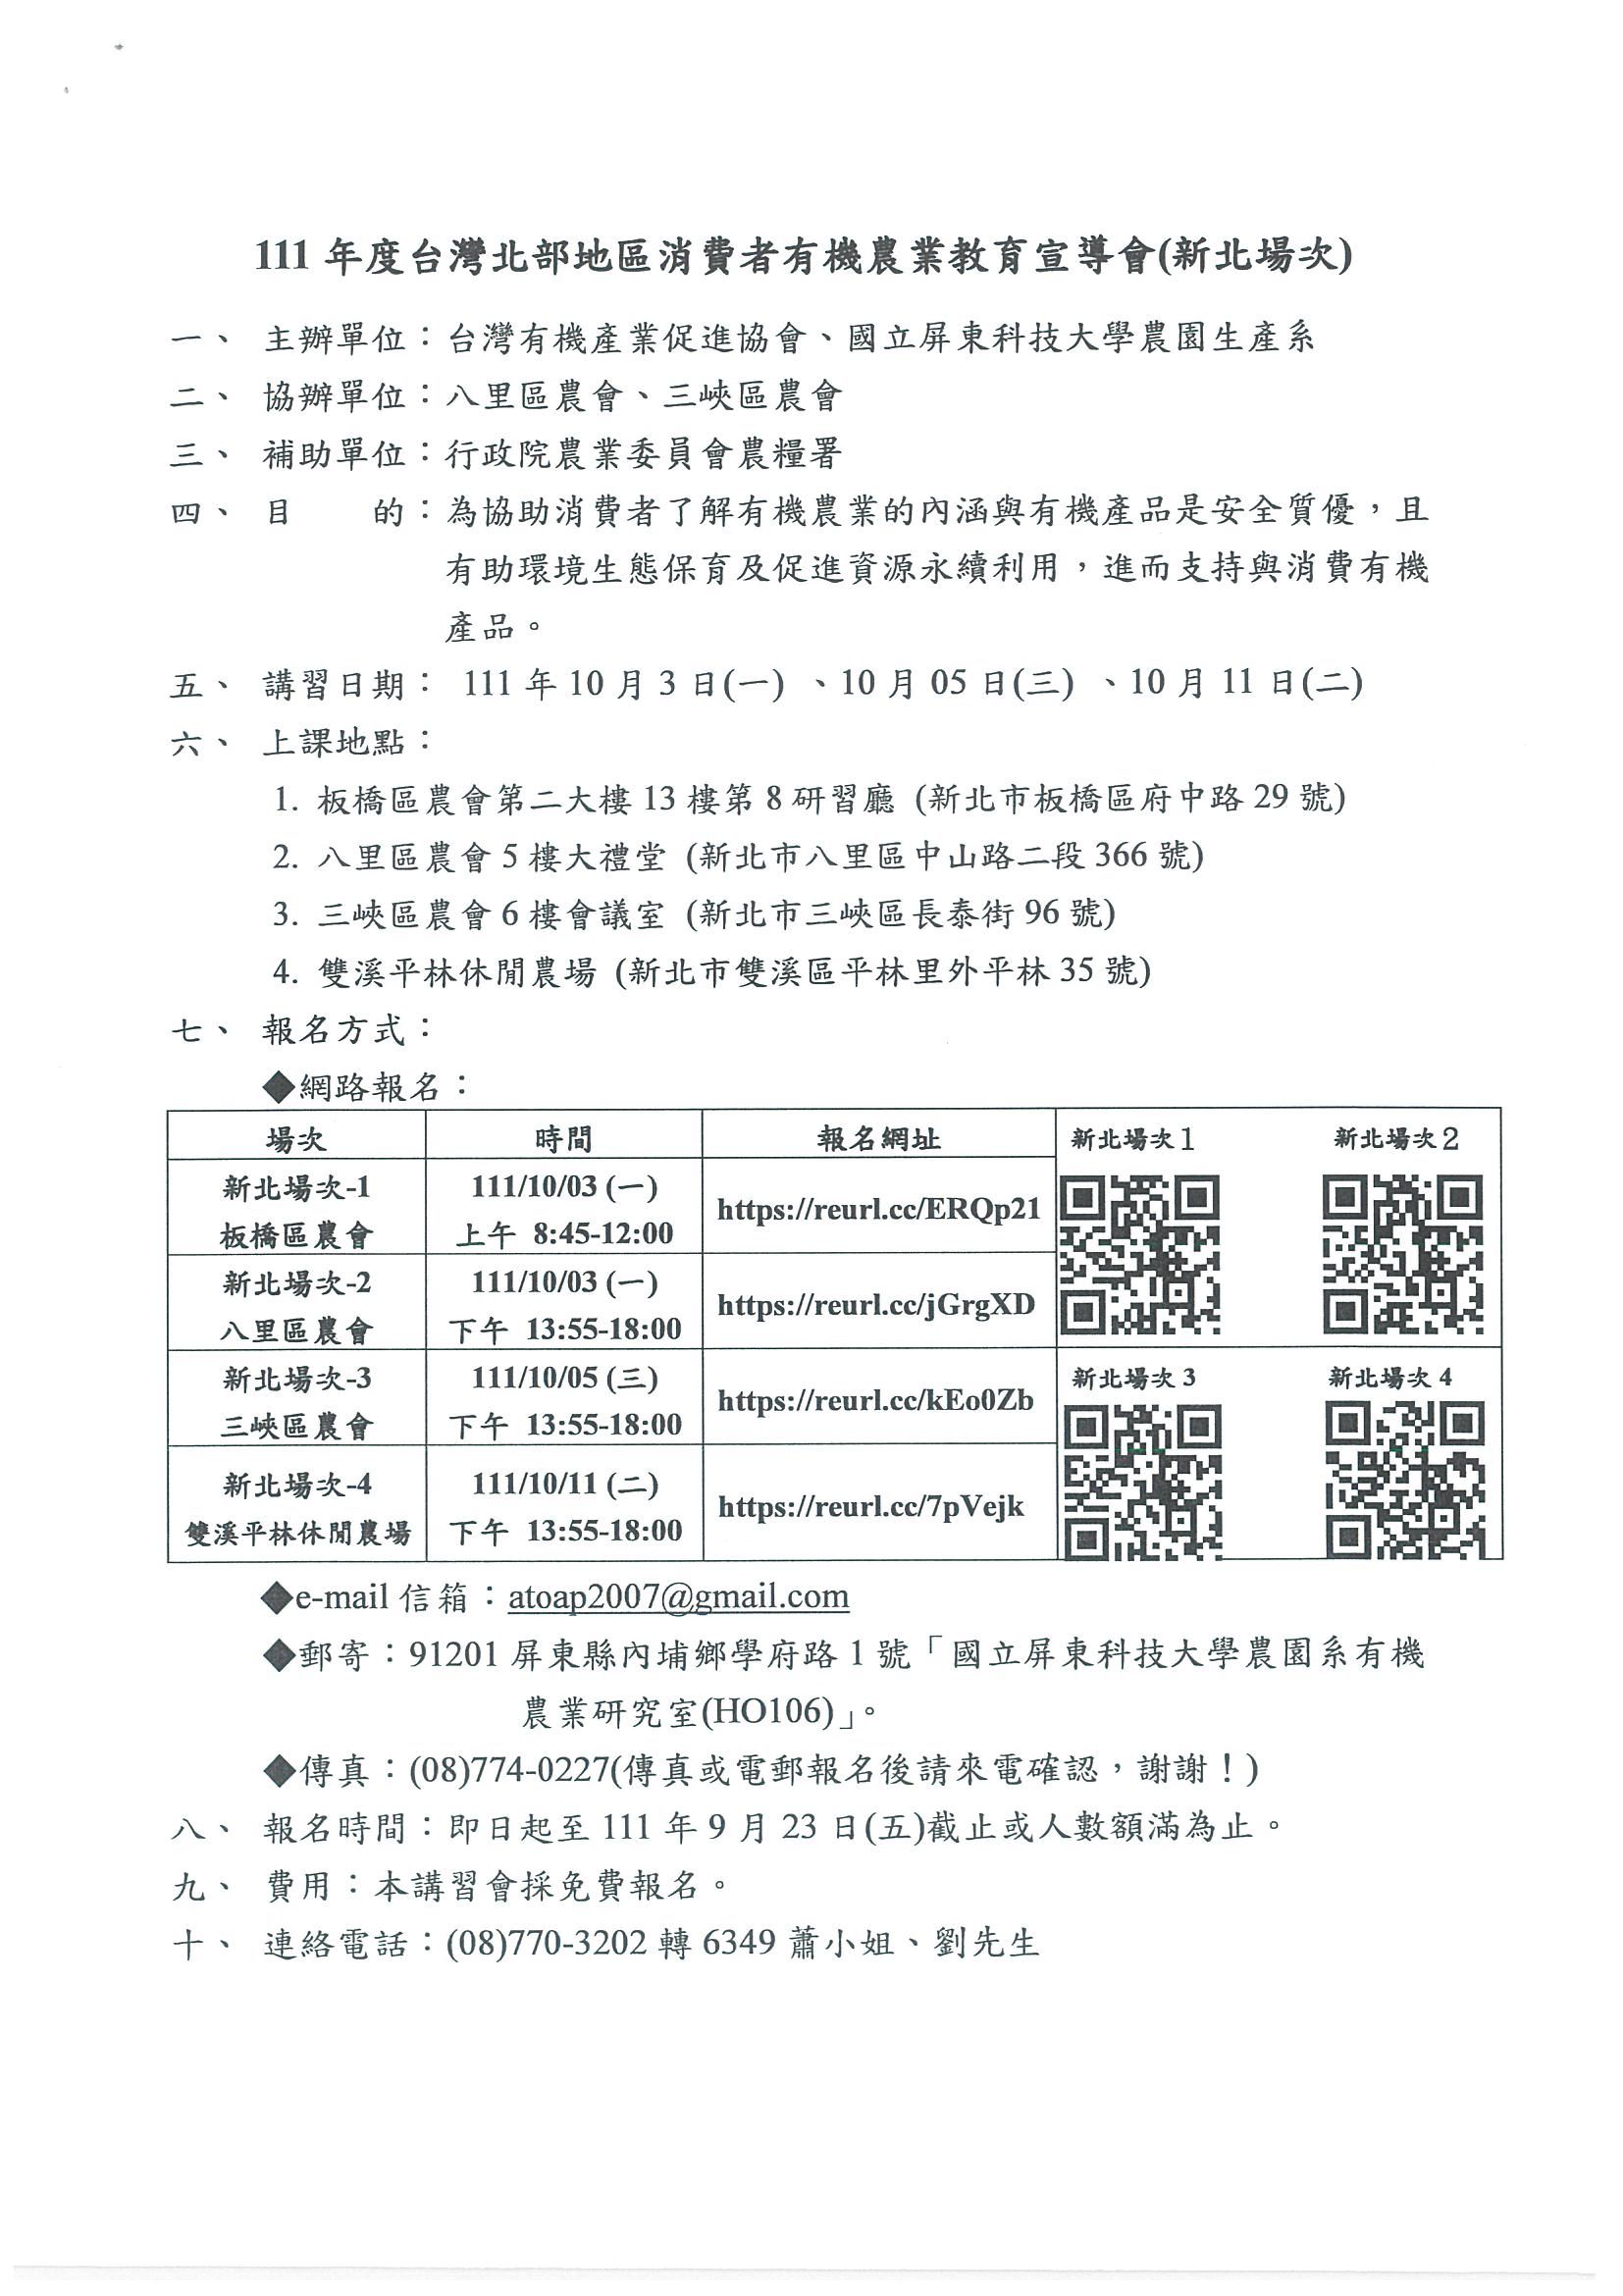 台灣有機促進協會課程資訊-5